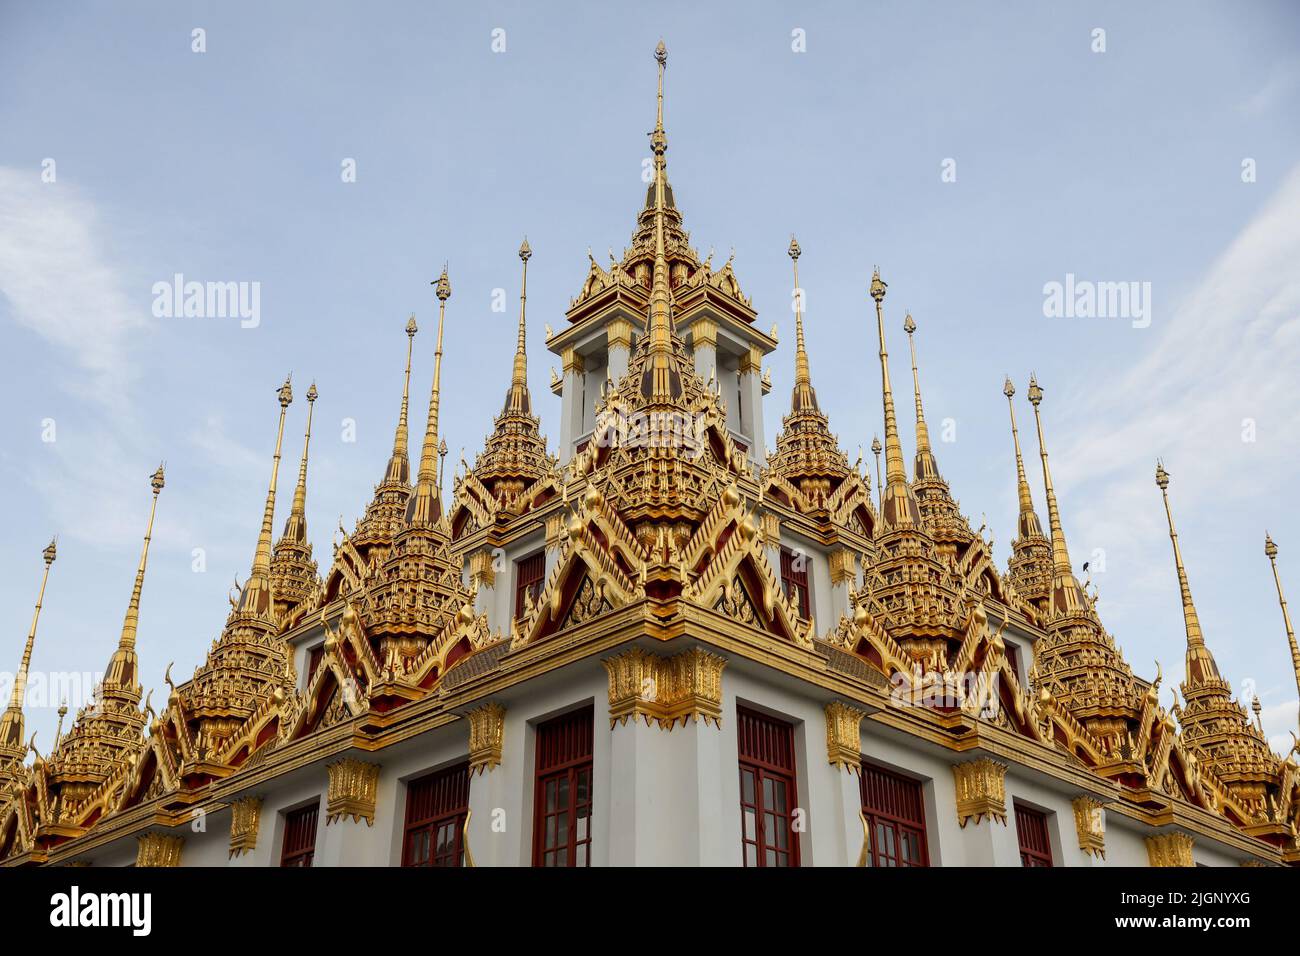 Ein Tempel im Großen Palast in Bangkok. Thailand setzt trotz einer globalen Pandemie und neuer Wellen von Coronavirus-Fällen die Beschränkungen fort, um seinen Tourismus zu fördern. Thailand. Stockfoto